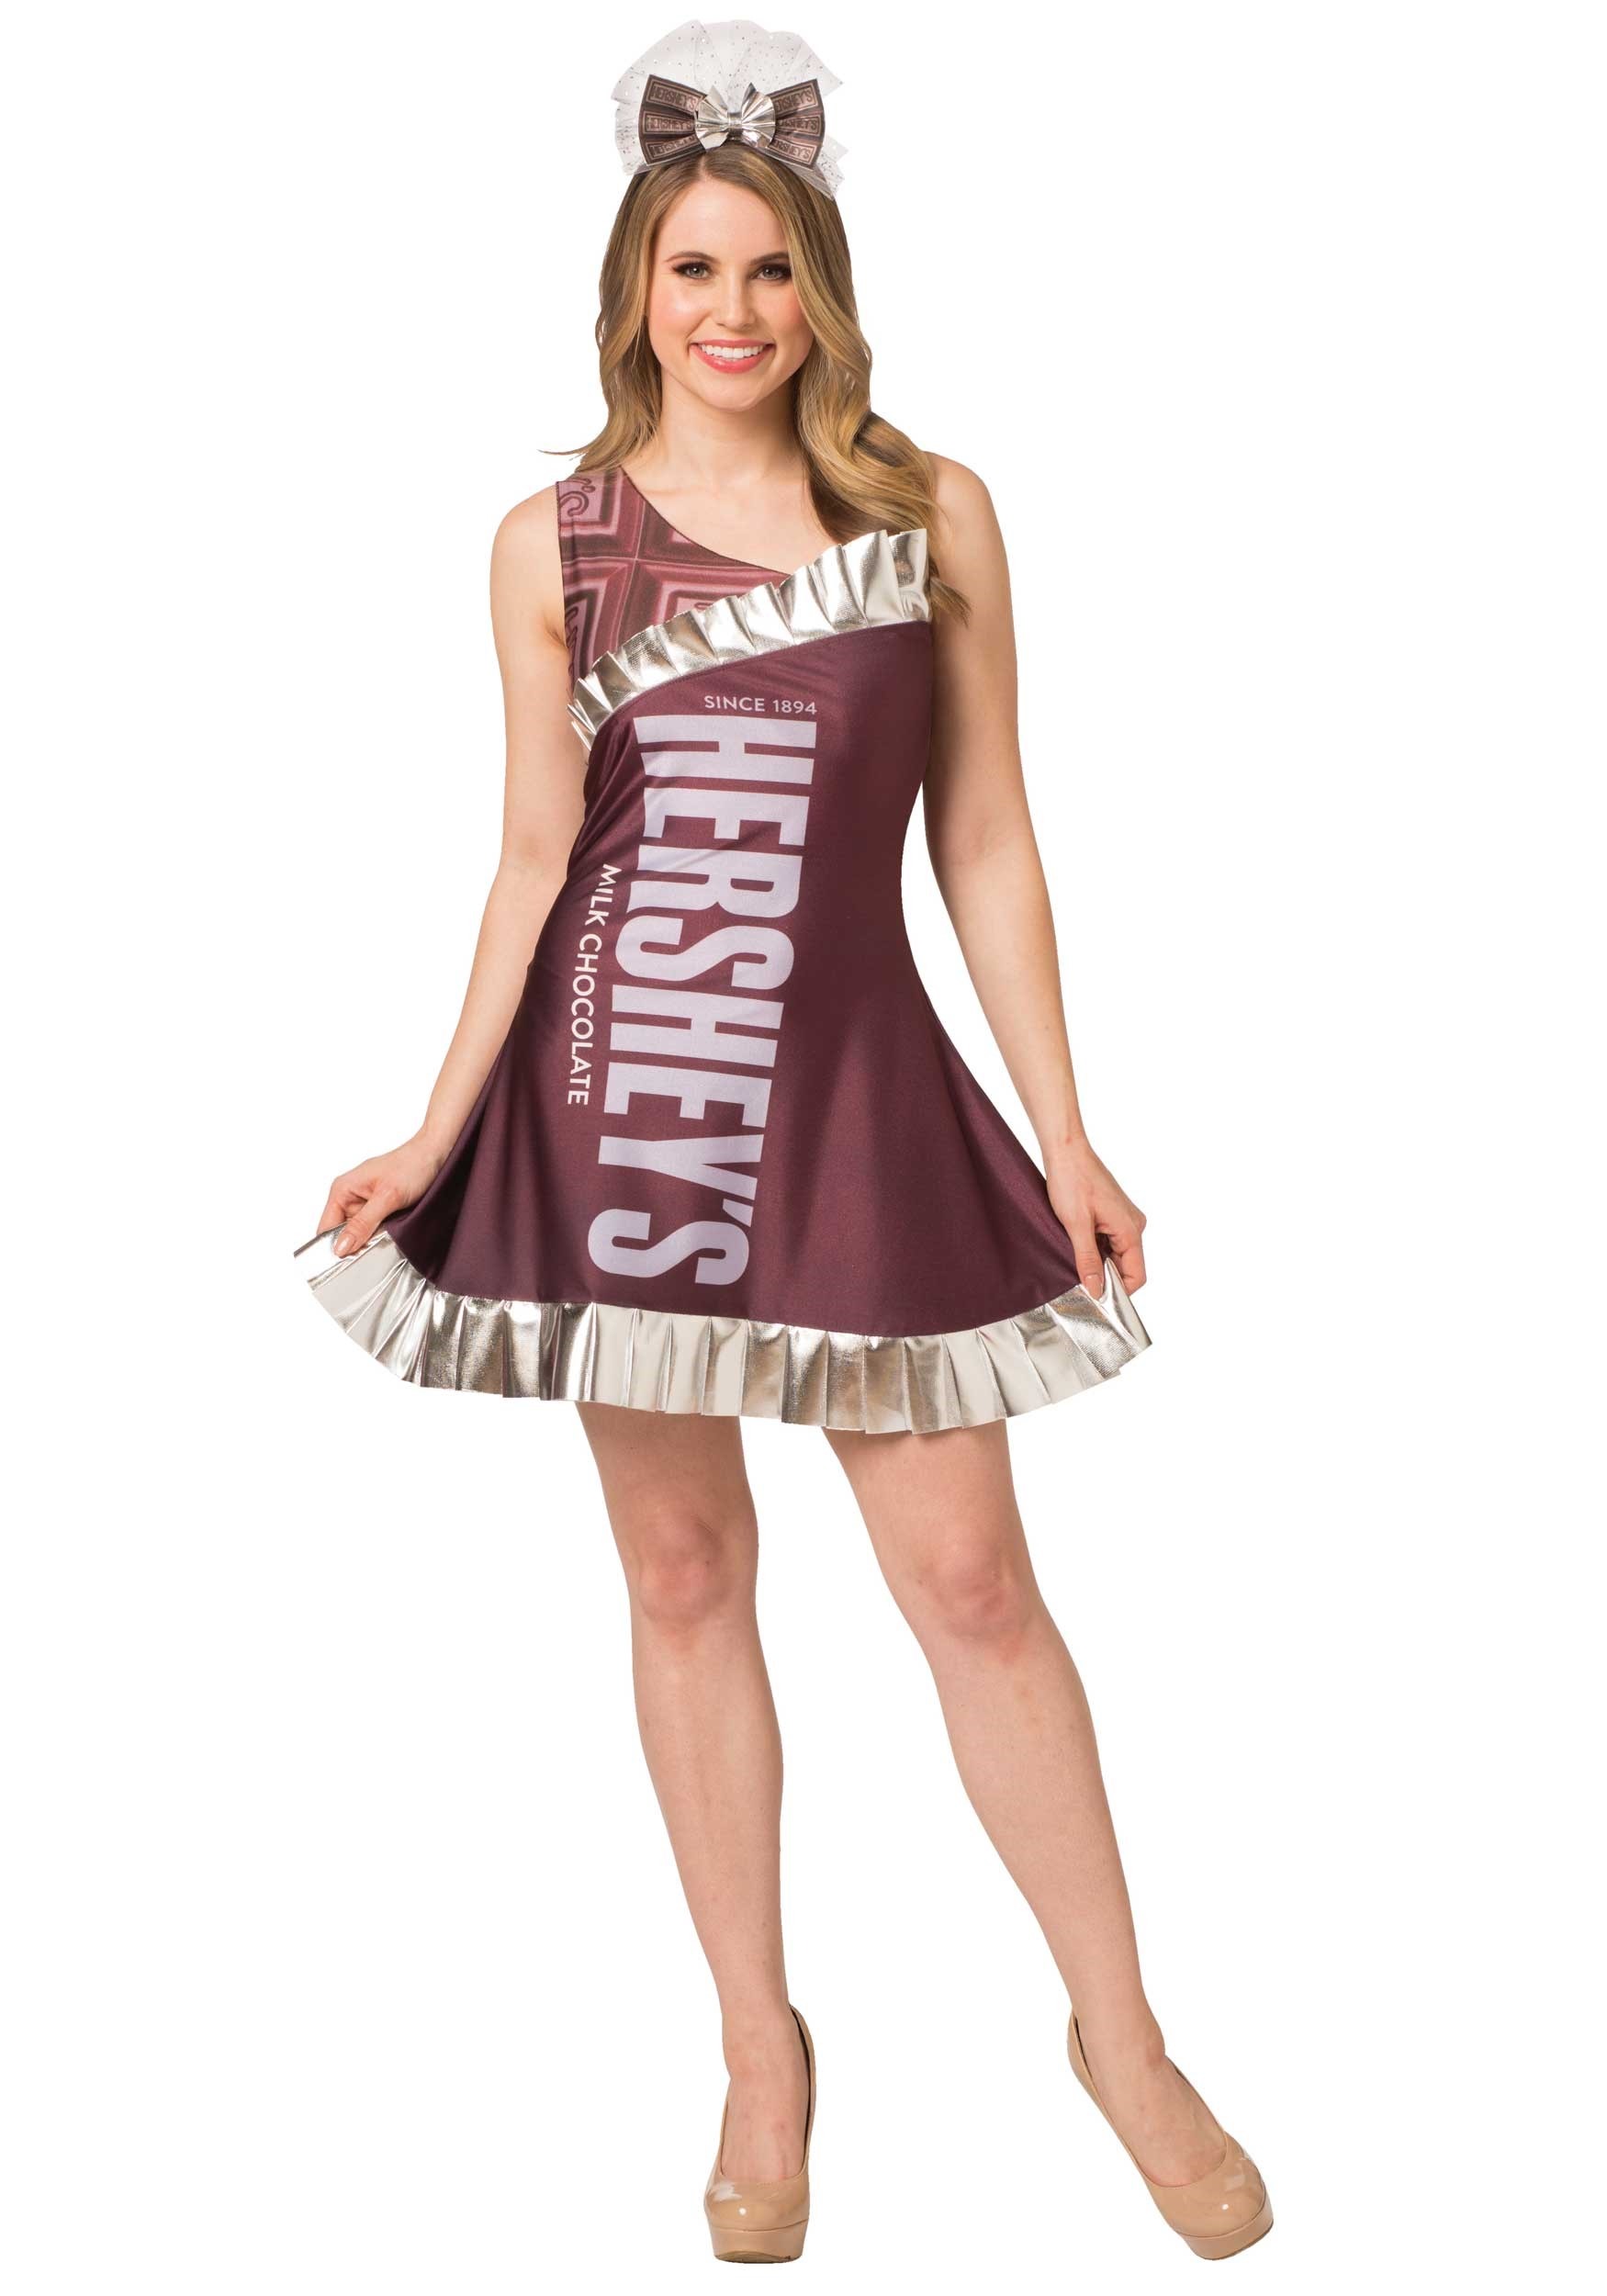 Hershey’s Womens Hershey’s Candy Bar Costume